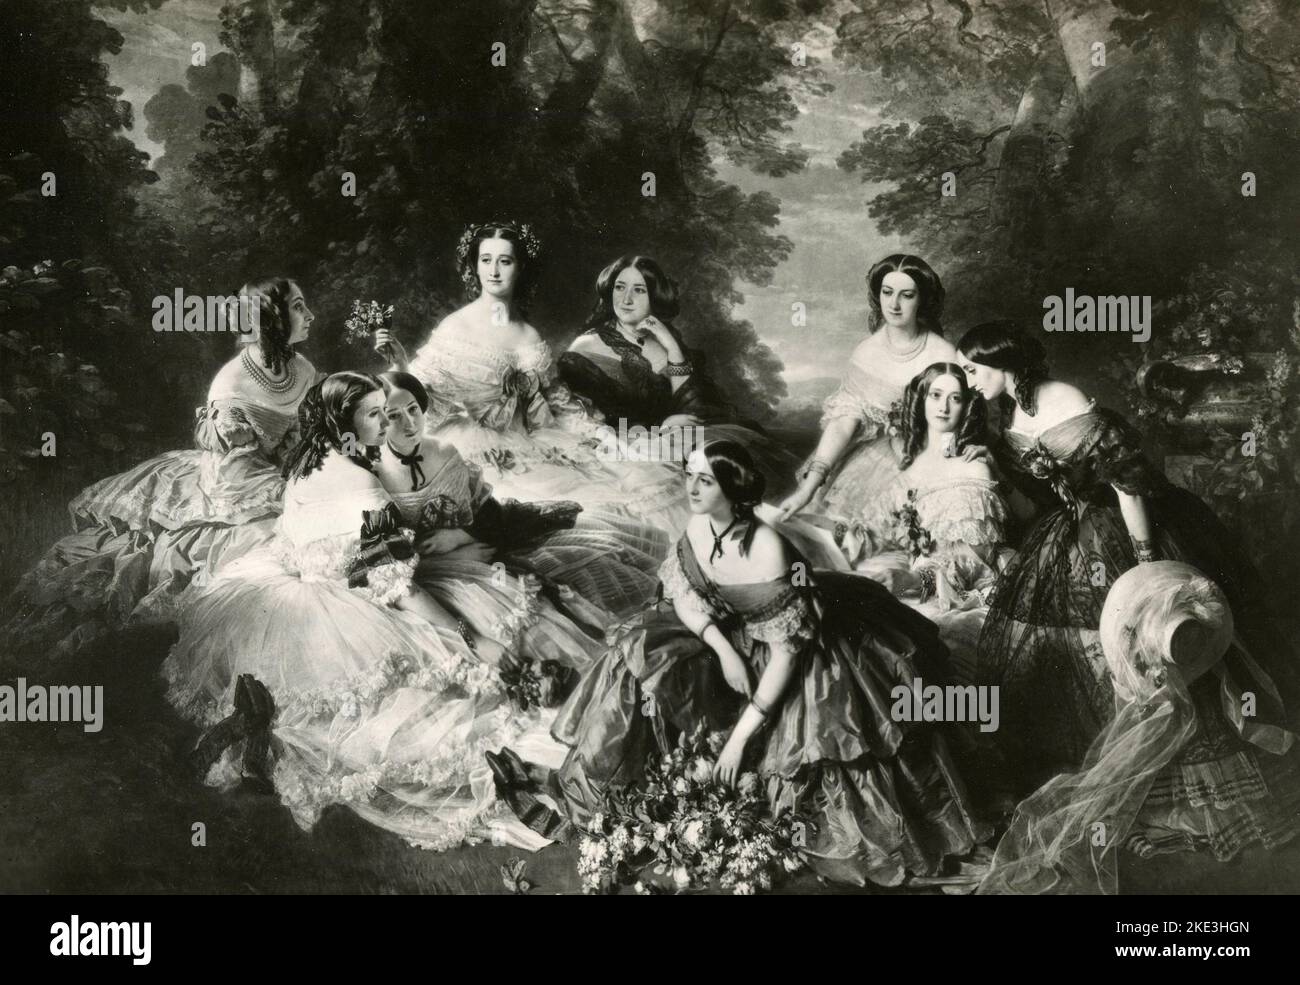 L'impératrice Eugénie entourée de ses dames en attente, peinture de l'artiste allemand Franz Xaver Winterhalter, 1855 Banque D'Images